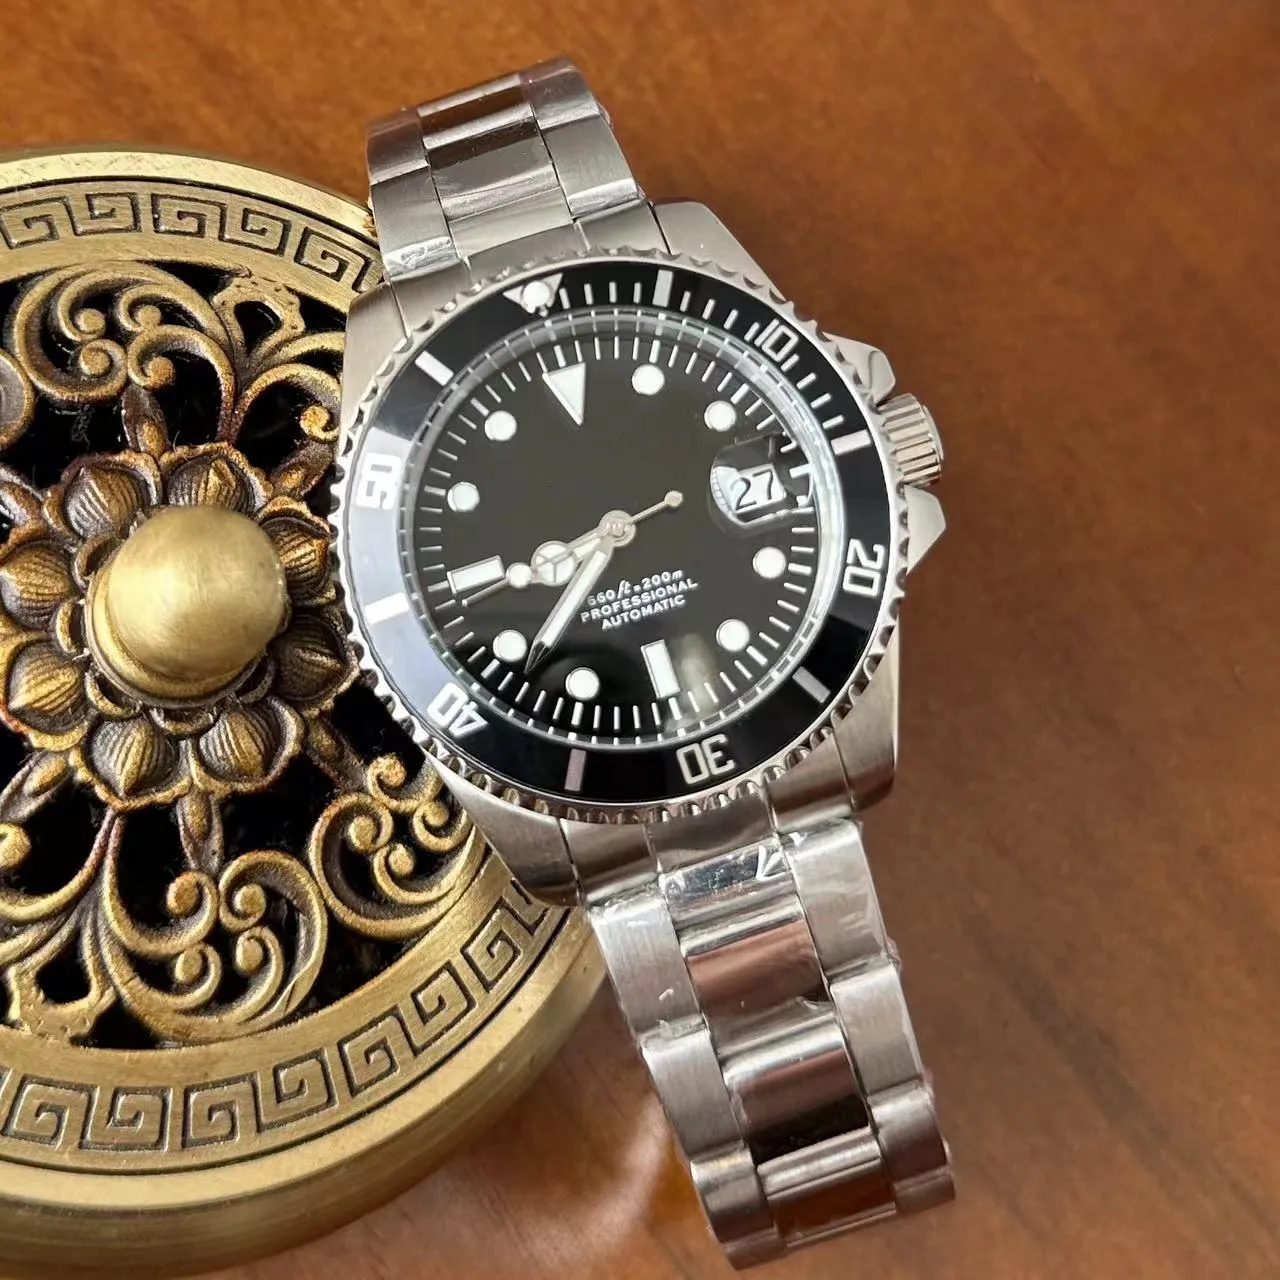 पूरी तरह से स्वचालित घड़ी पुरुष लक्जरी पुरुष नए लोगो सप्लायर वॉच मूवमेंट जापान लक्जरी स्टील ब्रांड पल्स घड़ी को अनुकूलित करते हैं।